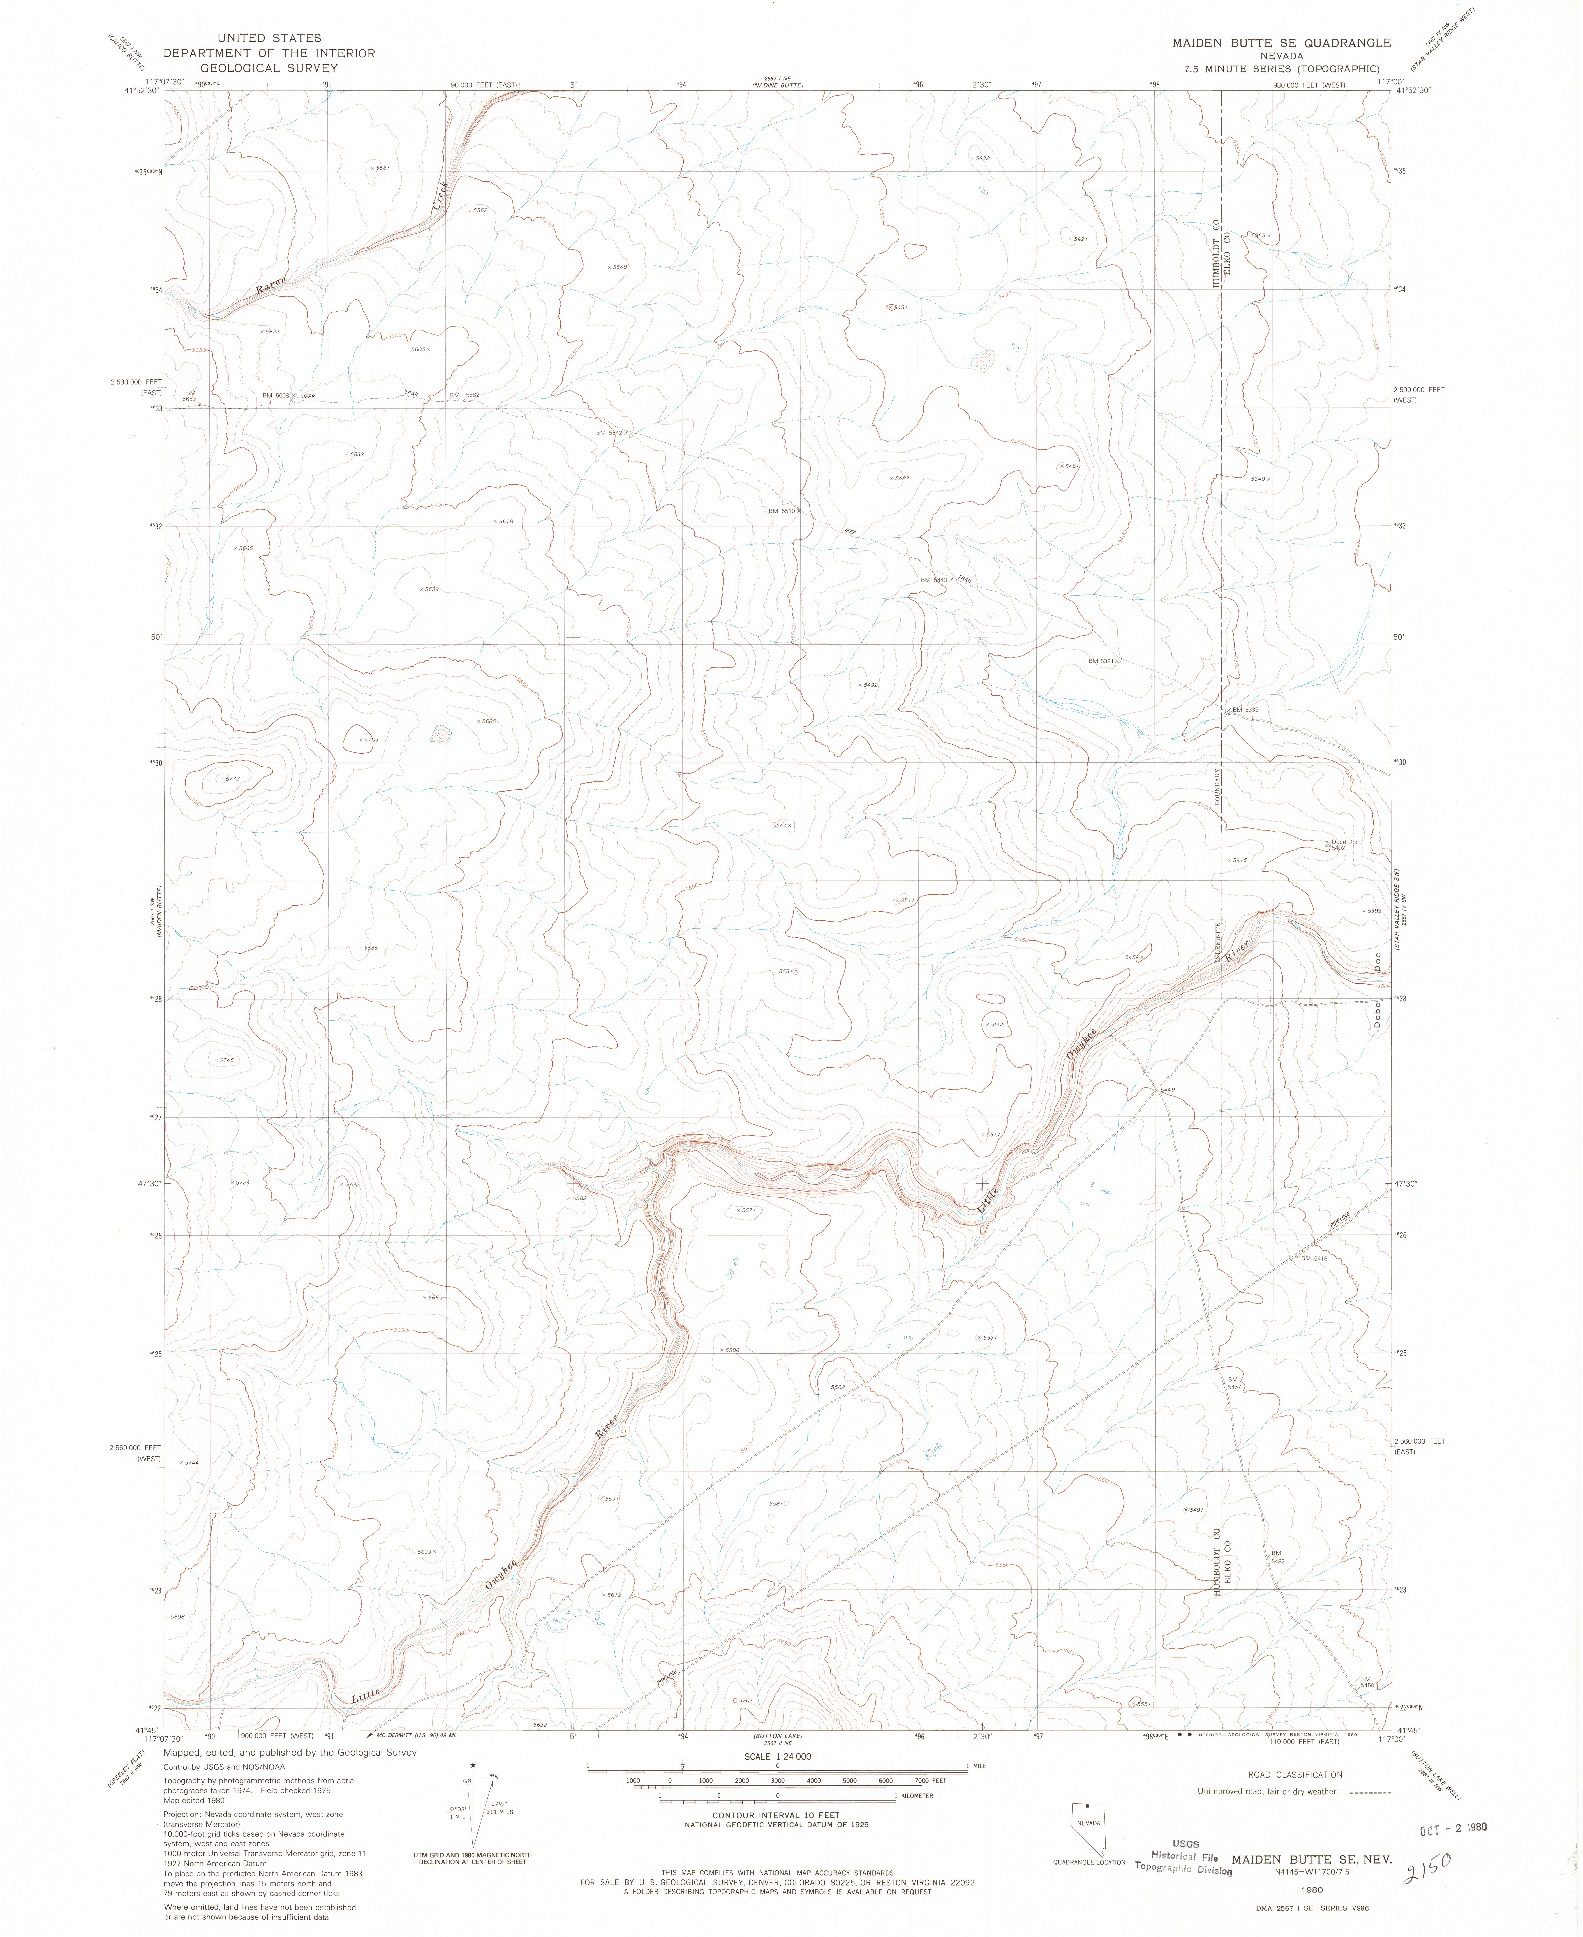 USGS 1:24000-SCALE QUADRANGLE FOR MAIDEN BUTTE SE, NV 1980